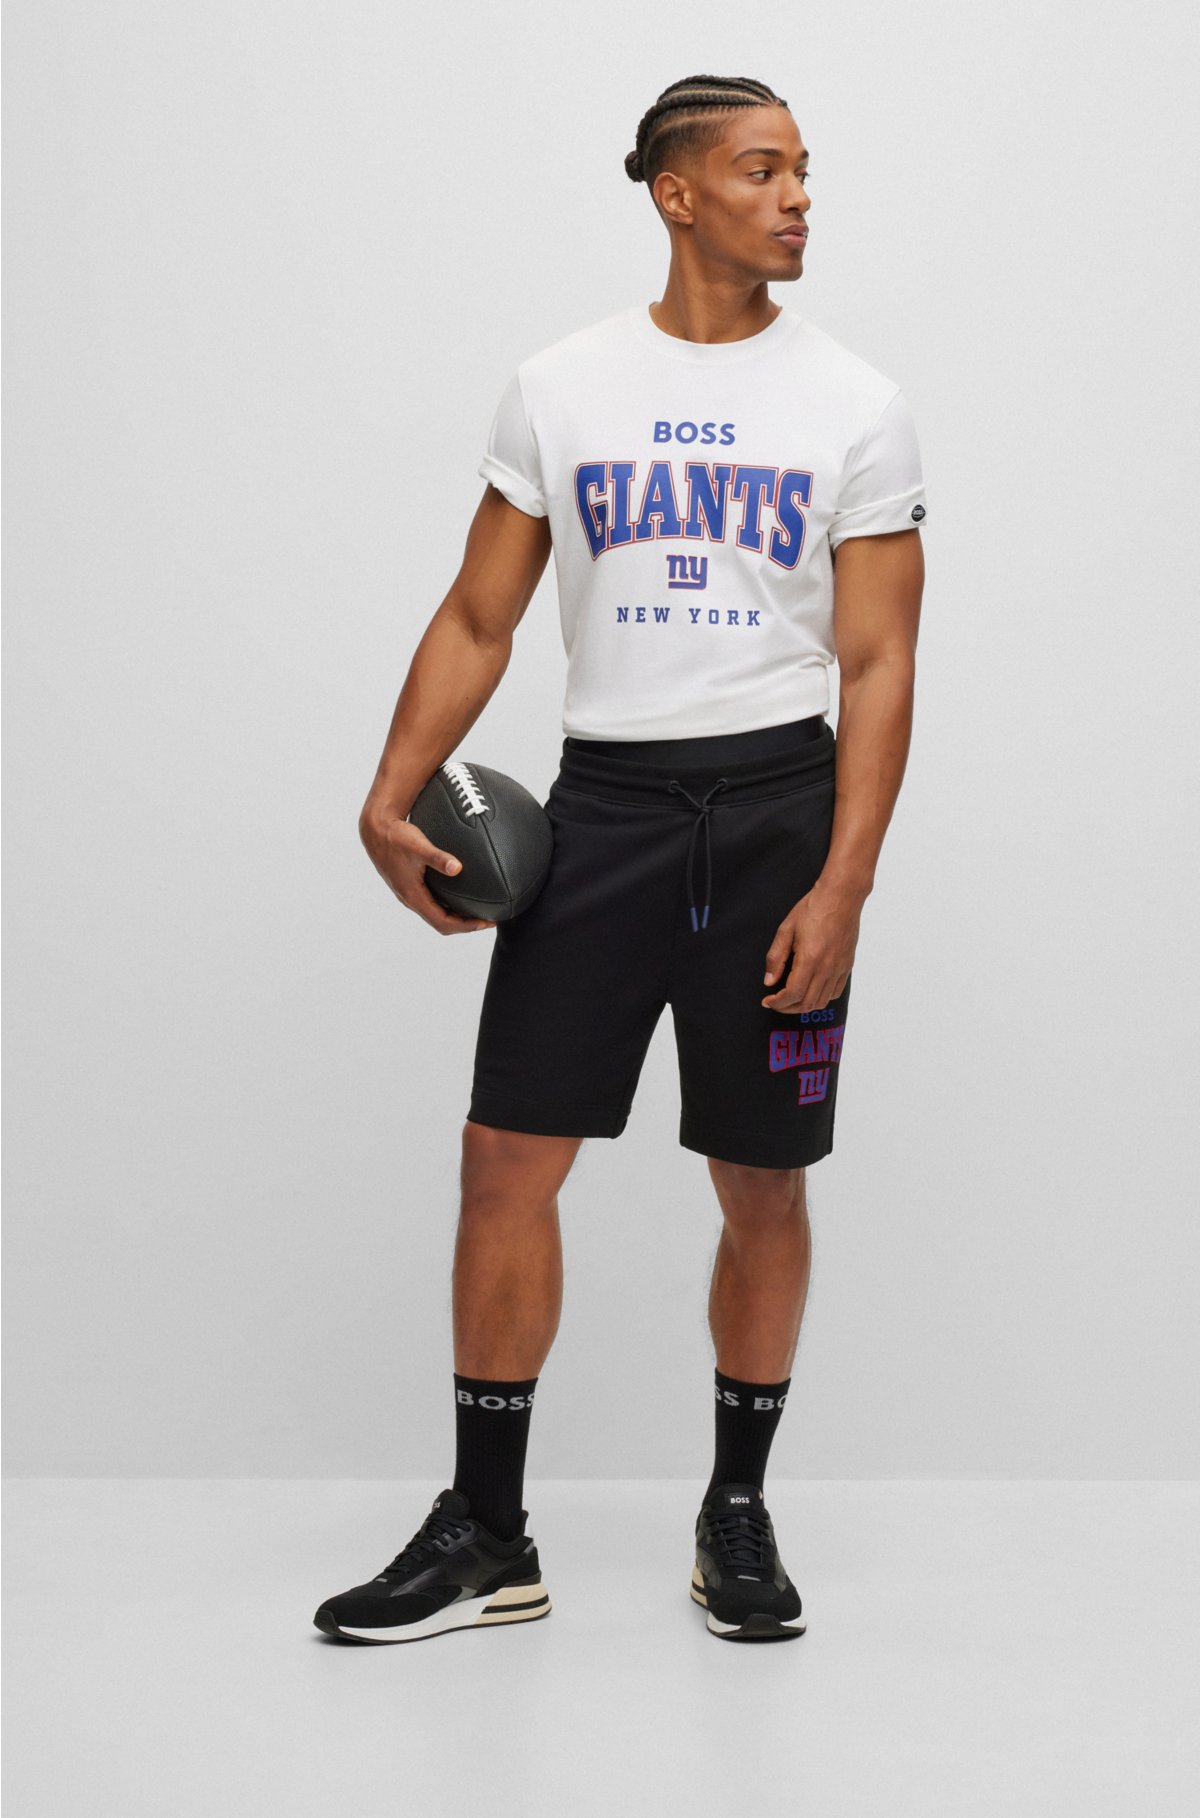 Giants Jersey Tshirt 